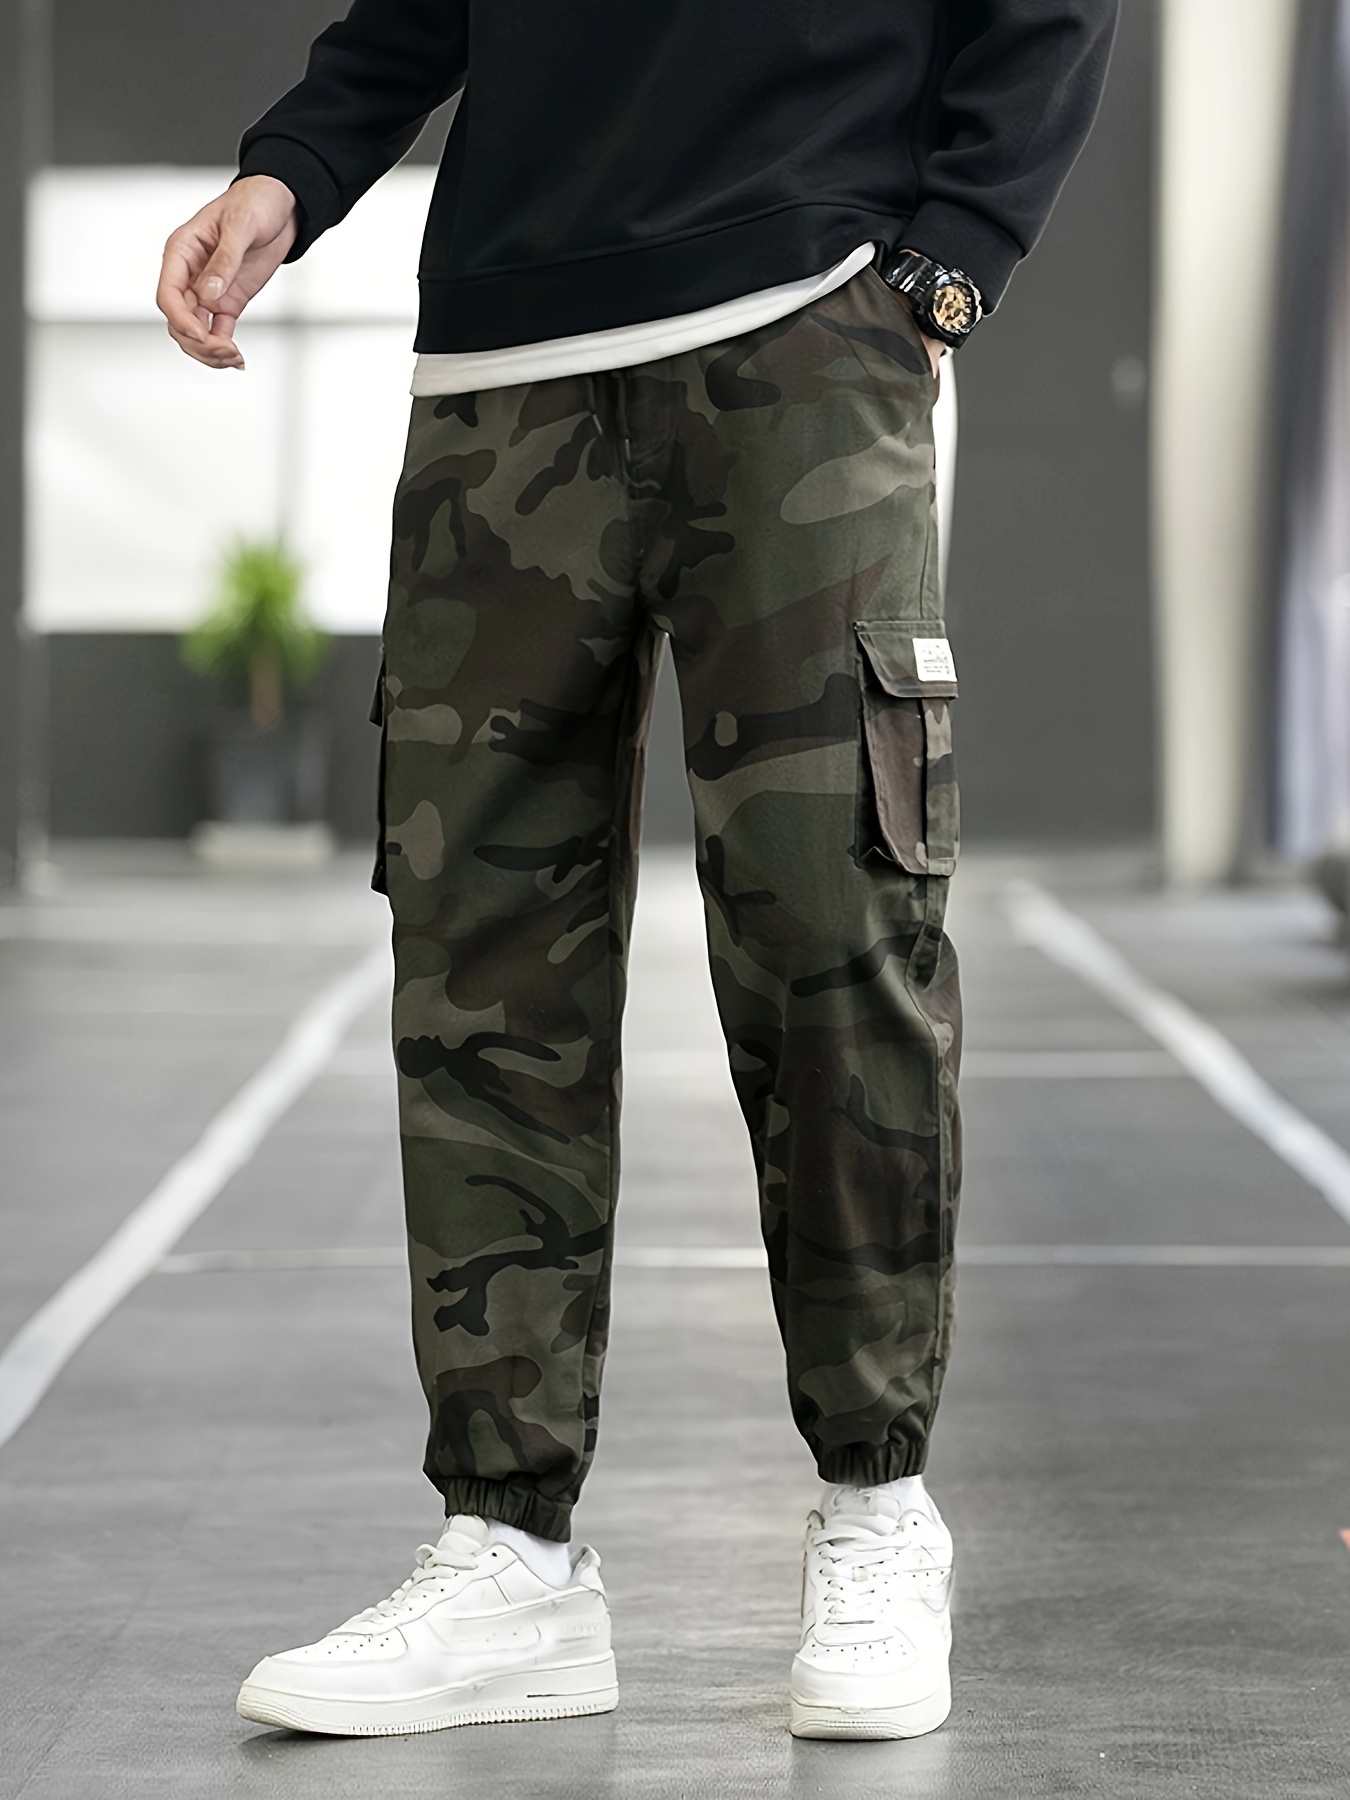 Pantalones cargo militares para hombre, estilo cargo, estilo militar,  camuflaje, combate, trabajo, con 6 bolsillos